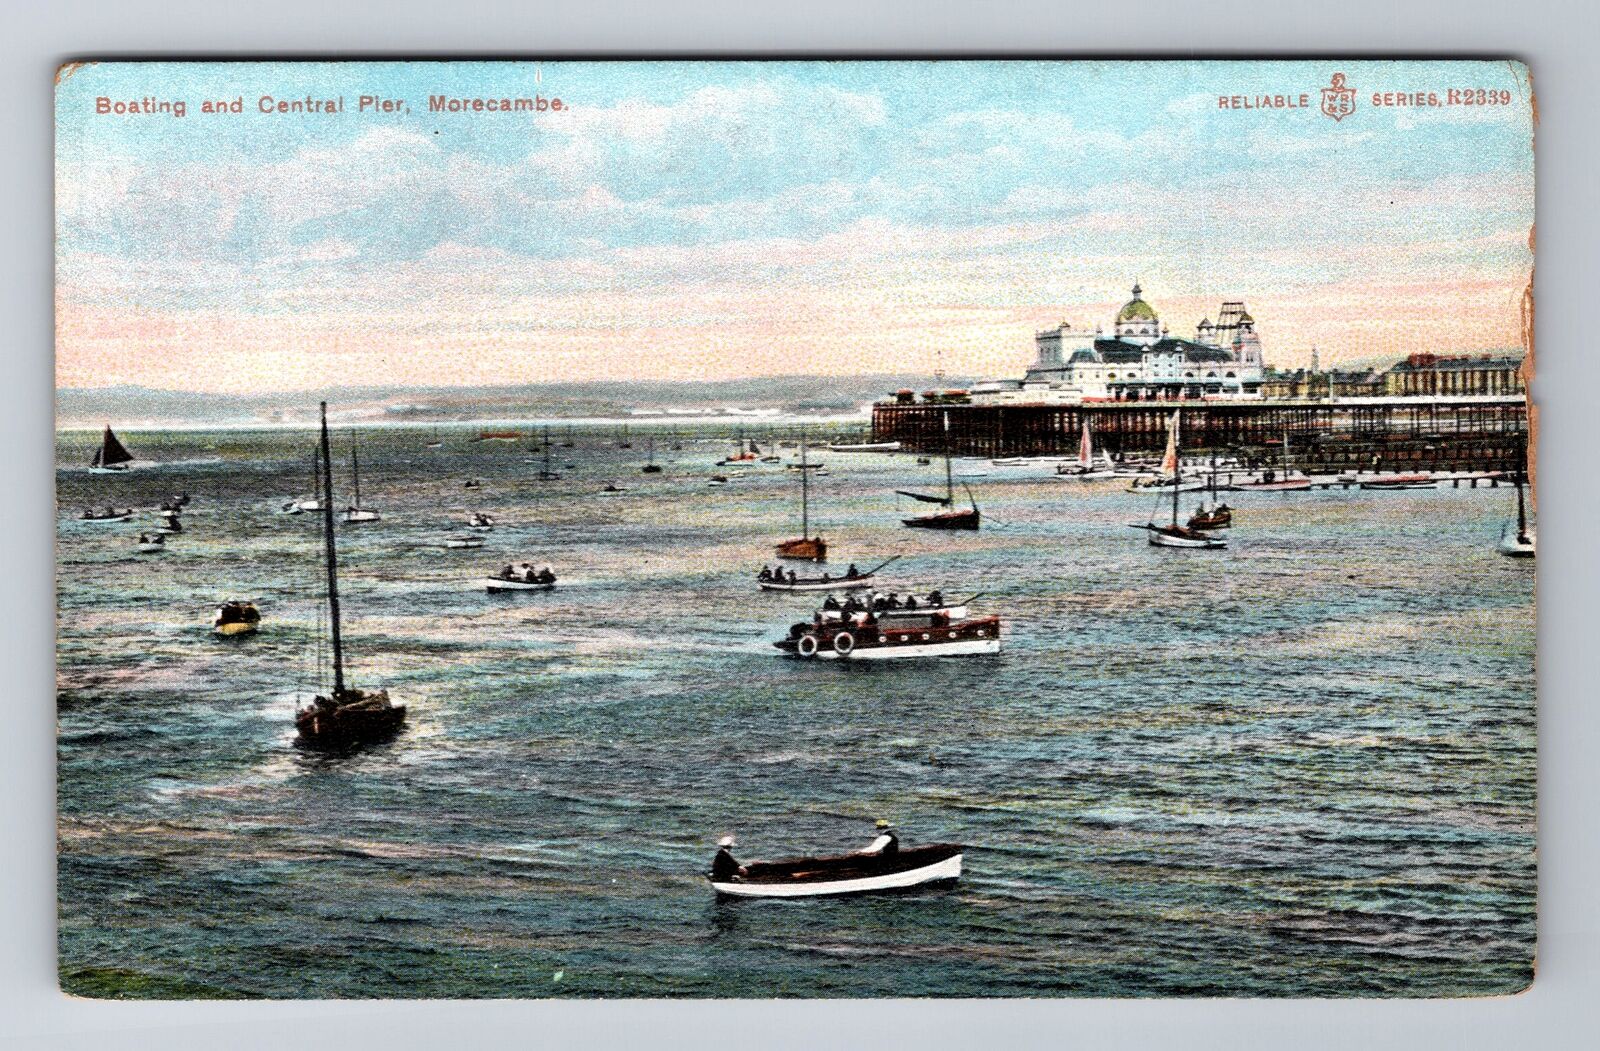 Morecambe England U.K., Boating & Central Pier, Antique Vintage Postcard